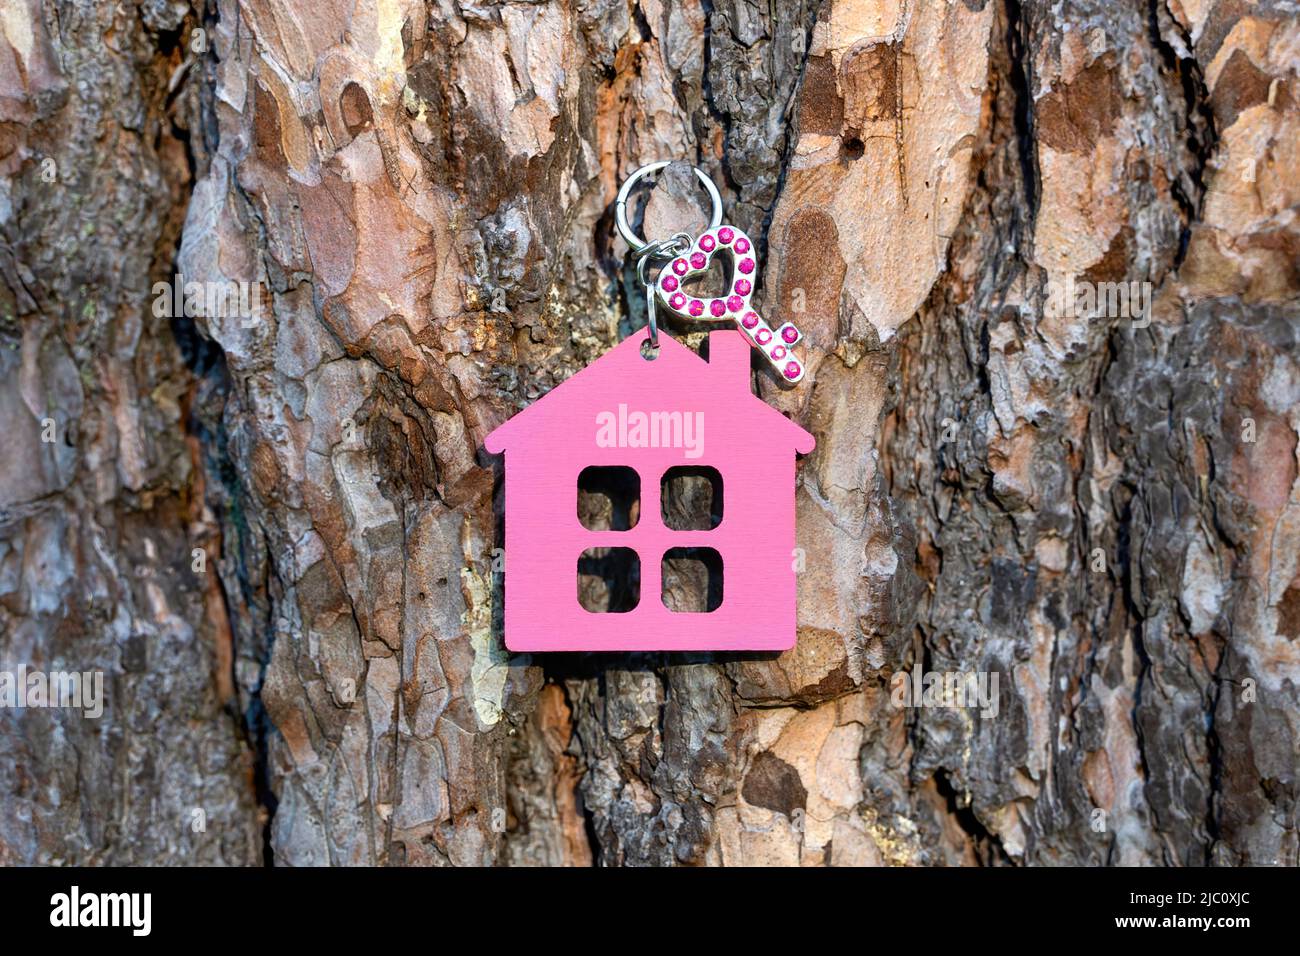 Petite clé décorée de strass ayant un porte-clés en forme de maison rose accroche sur un tronc d'arbre à l'extérieur. Concept de maison douce. Banque D'Images